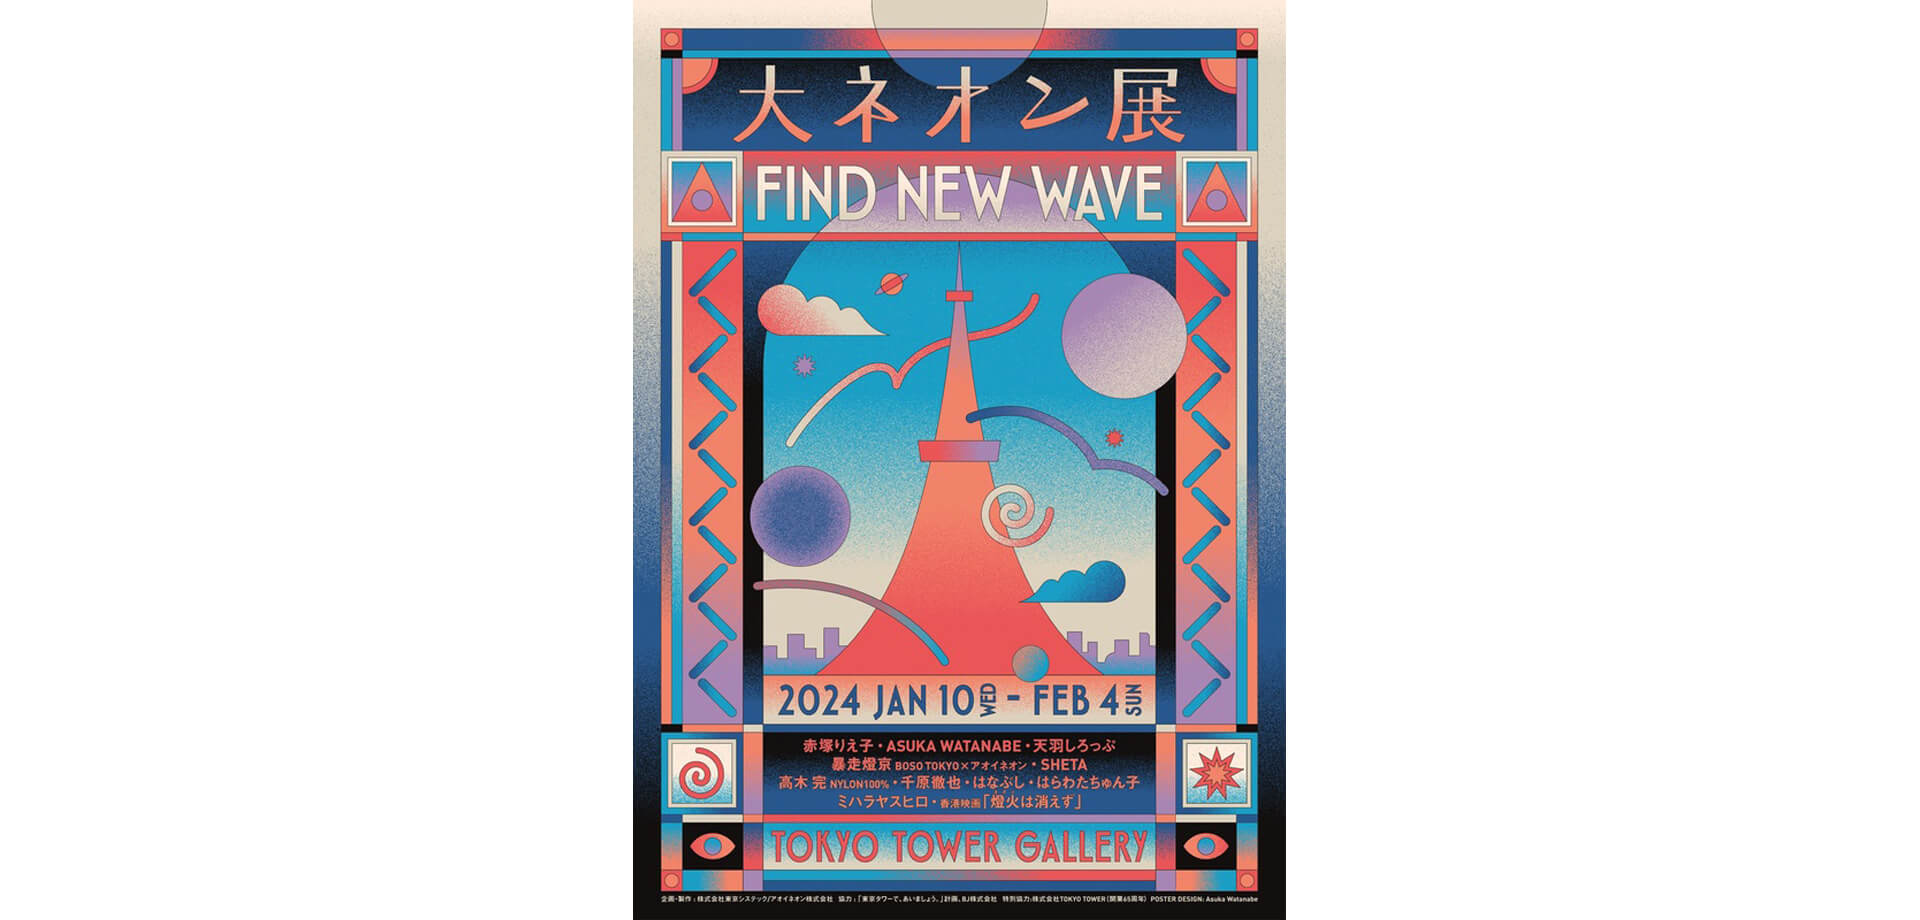 大ネオン展‐FIND NEW WAVE‐ポスター